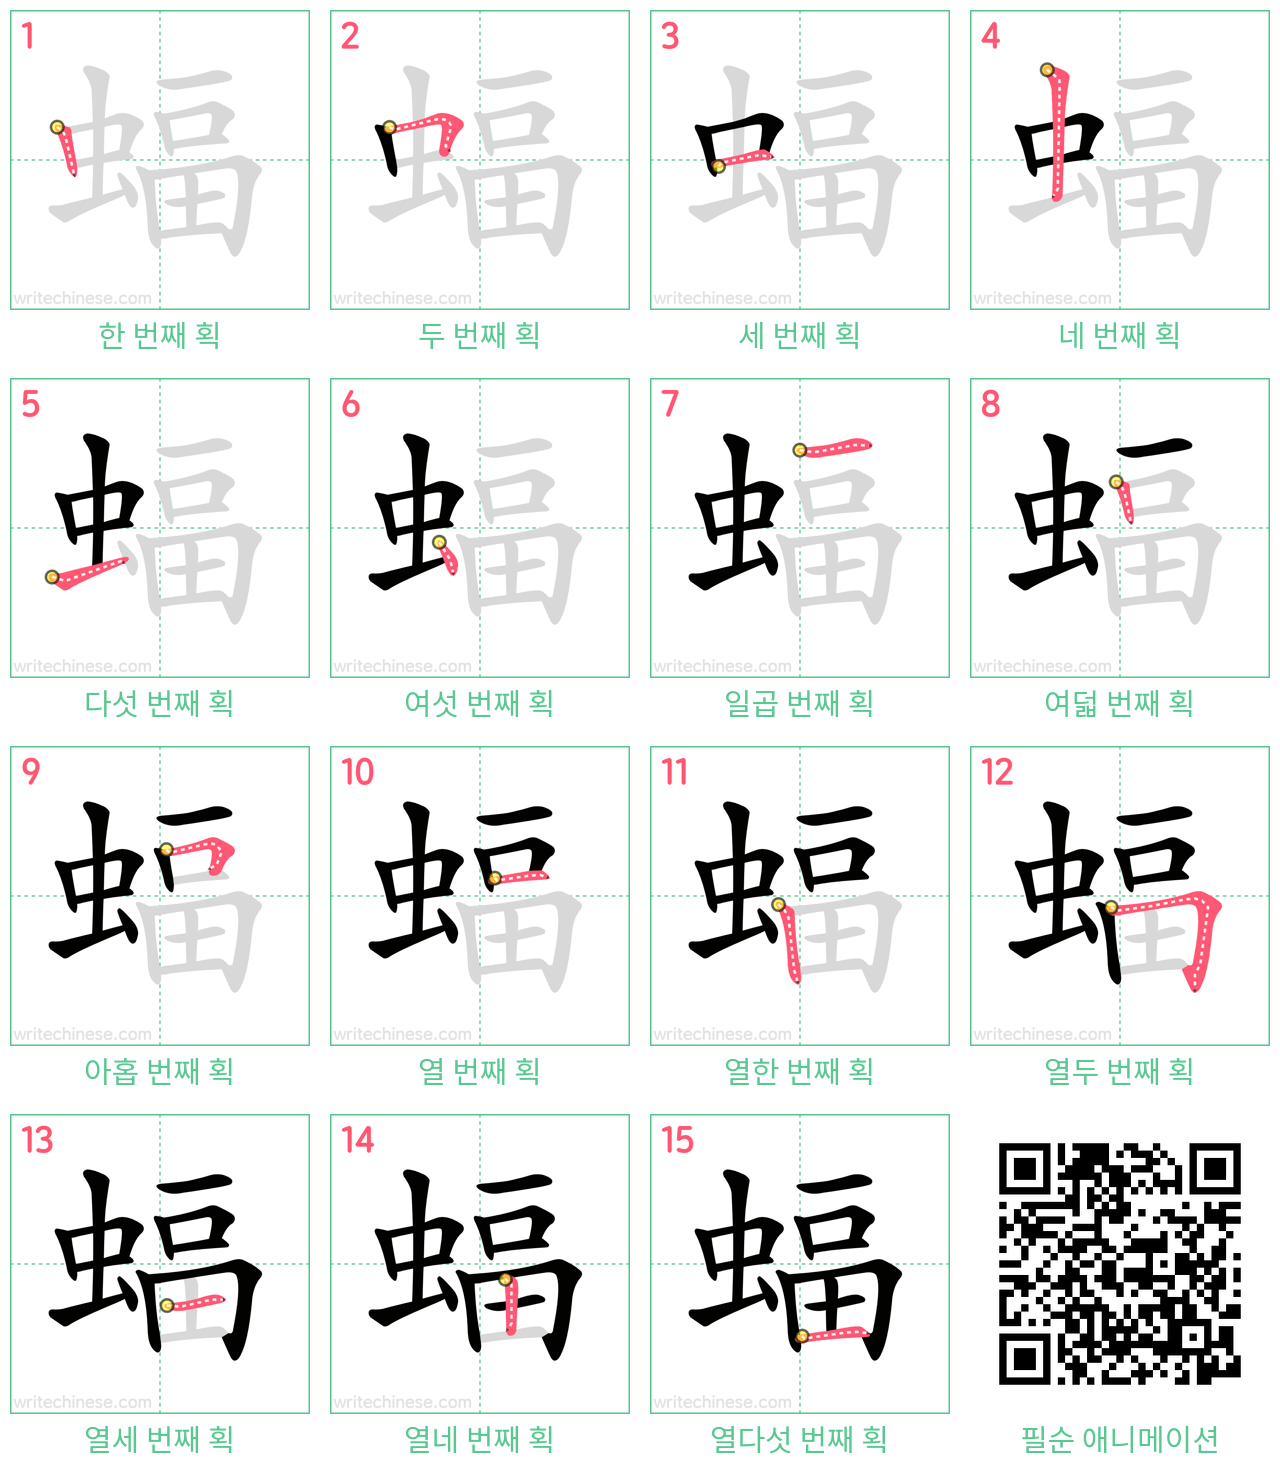 蝠 step-by-step stroke order diagrams